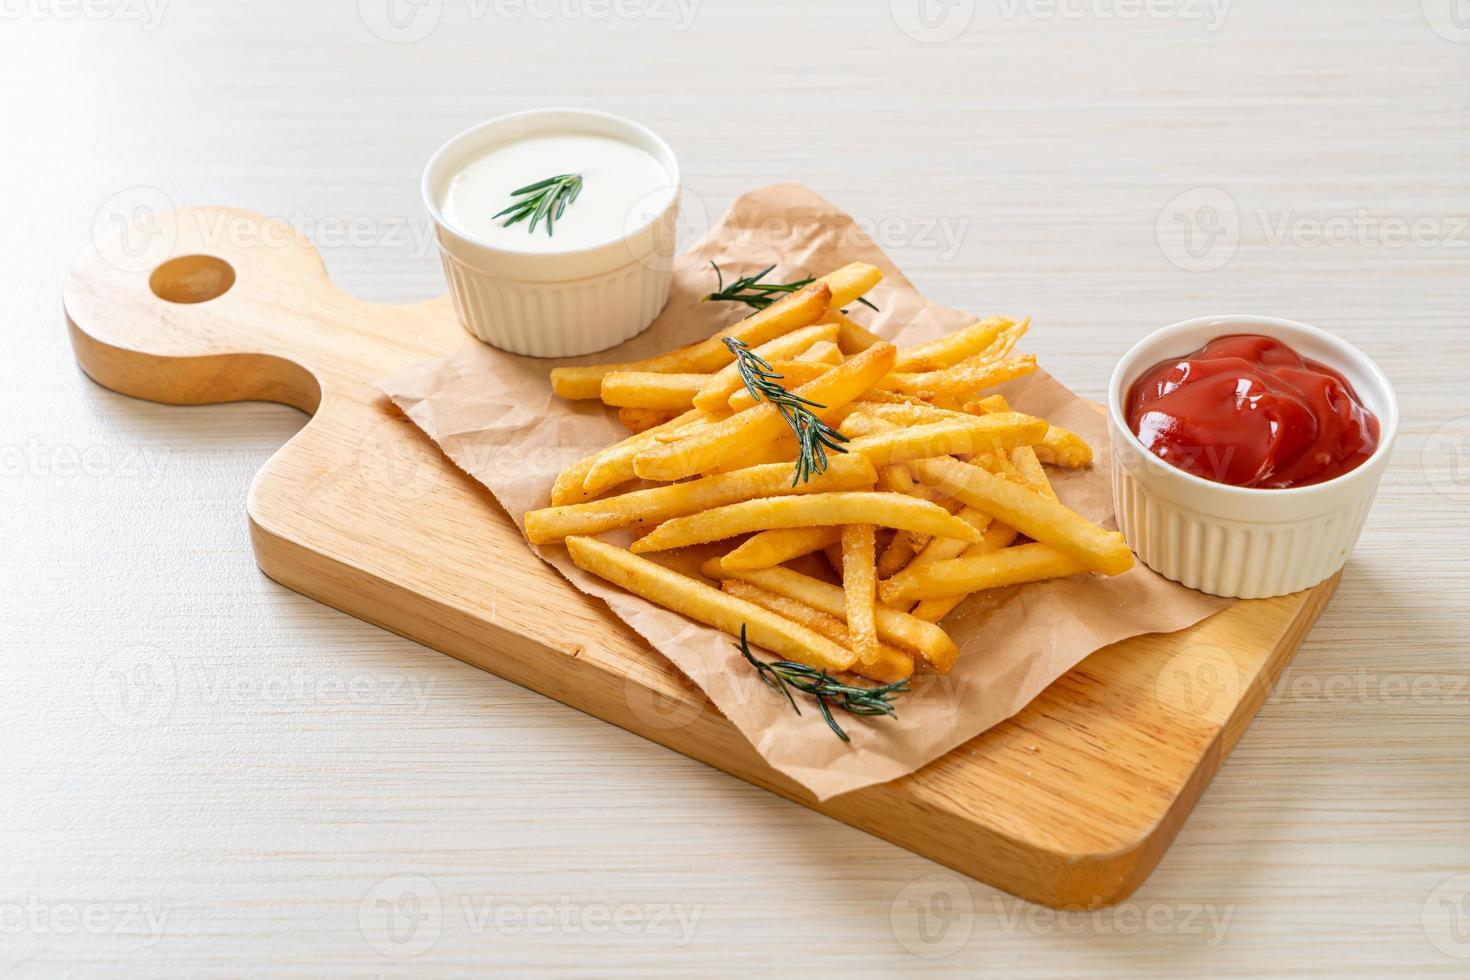 pommes frites med gräddfil och ketchup foto